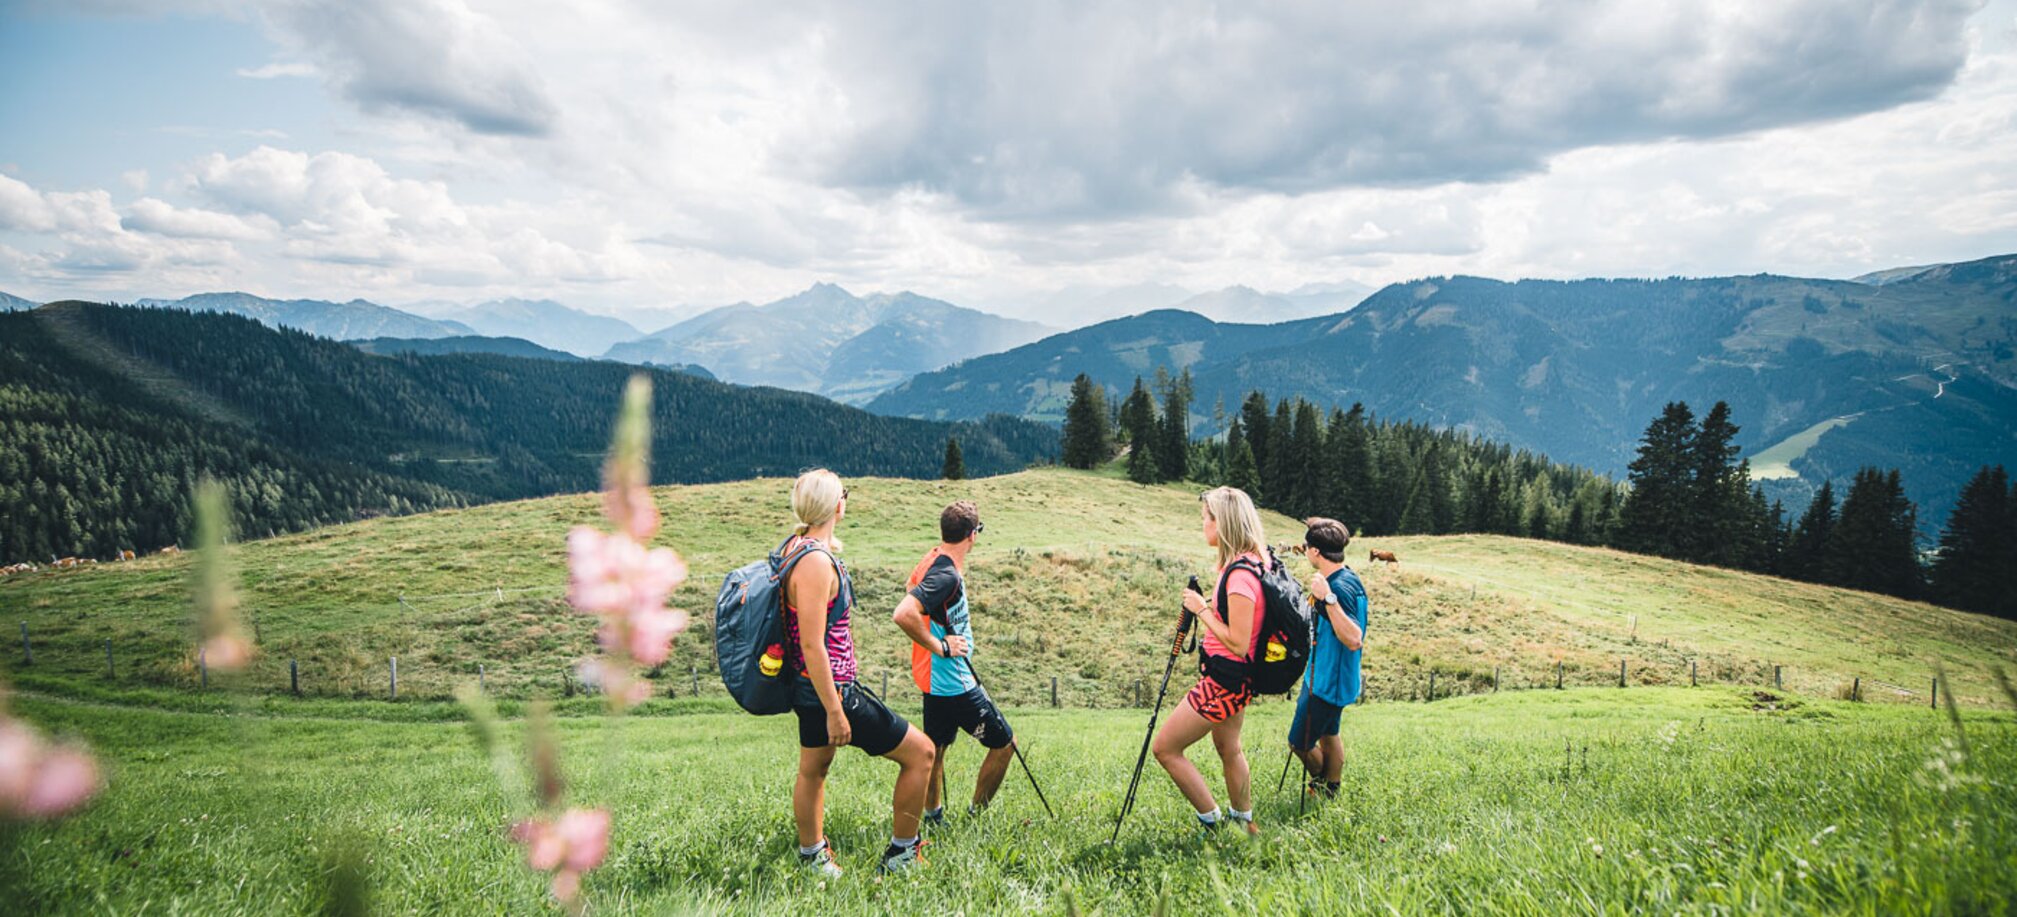 Wandern auf den Wanderwegen über die Bergwiesen am Hochkönig im Sommerurlaub in Ski amadé | © Hochkönig Tourismus GmbH